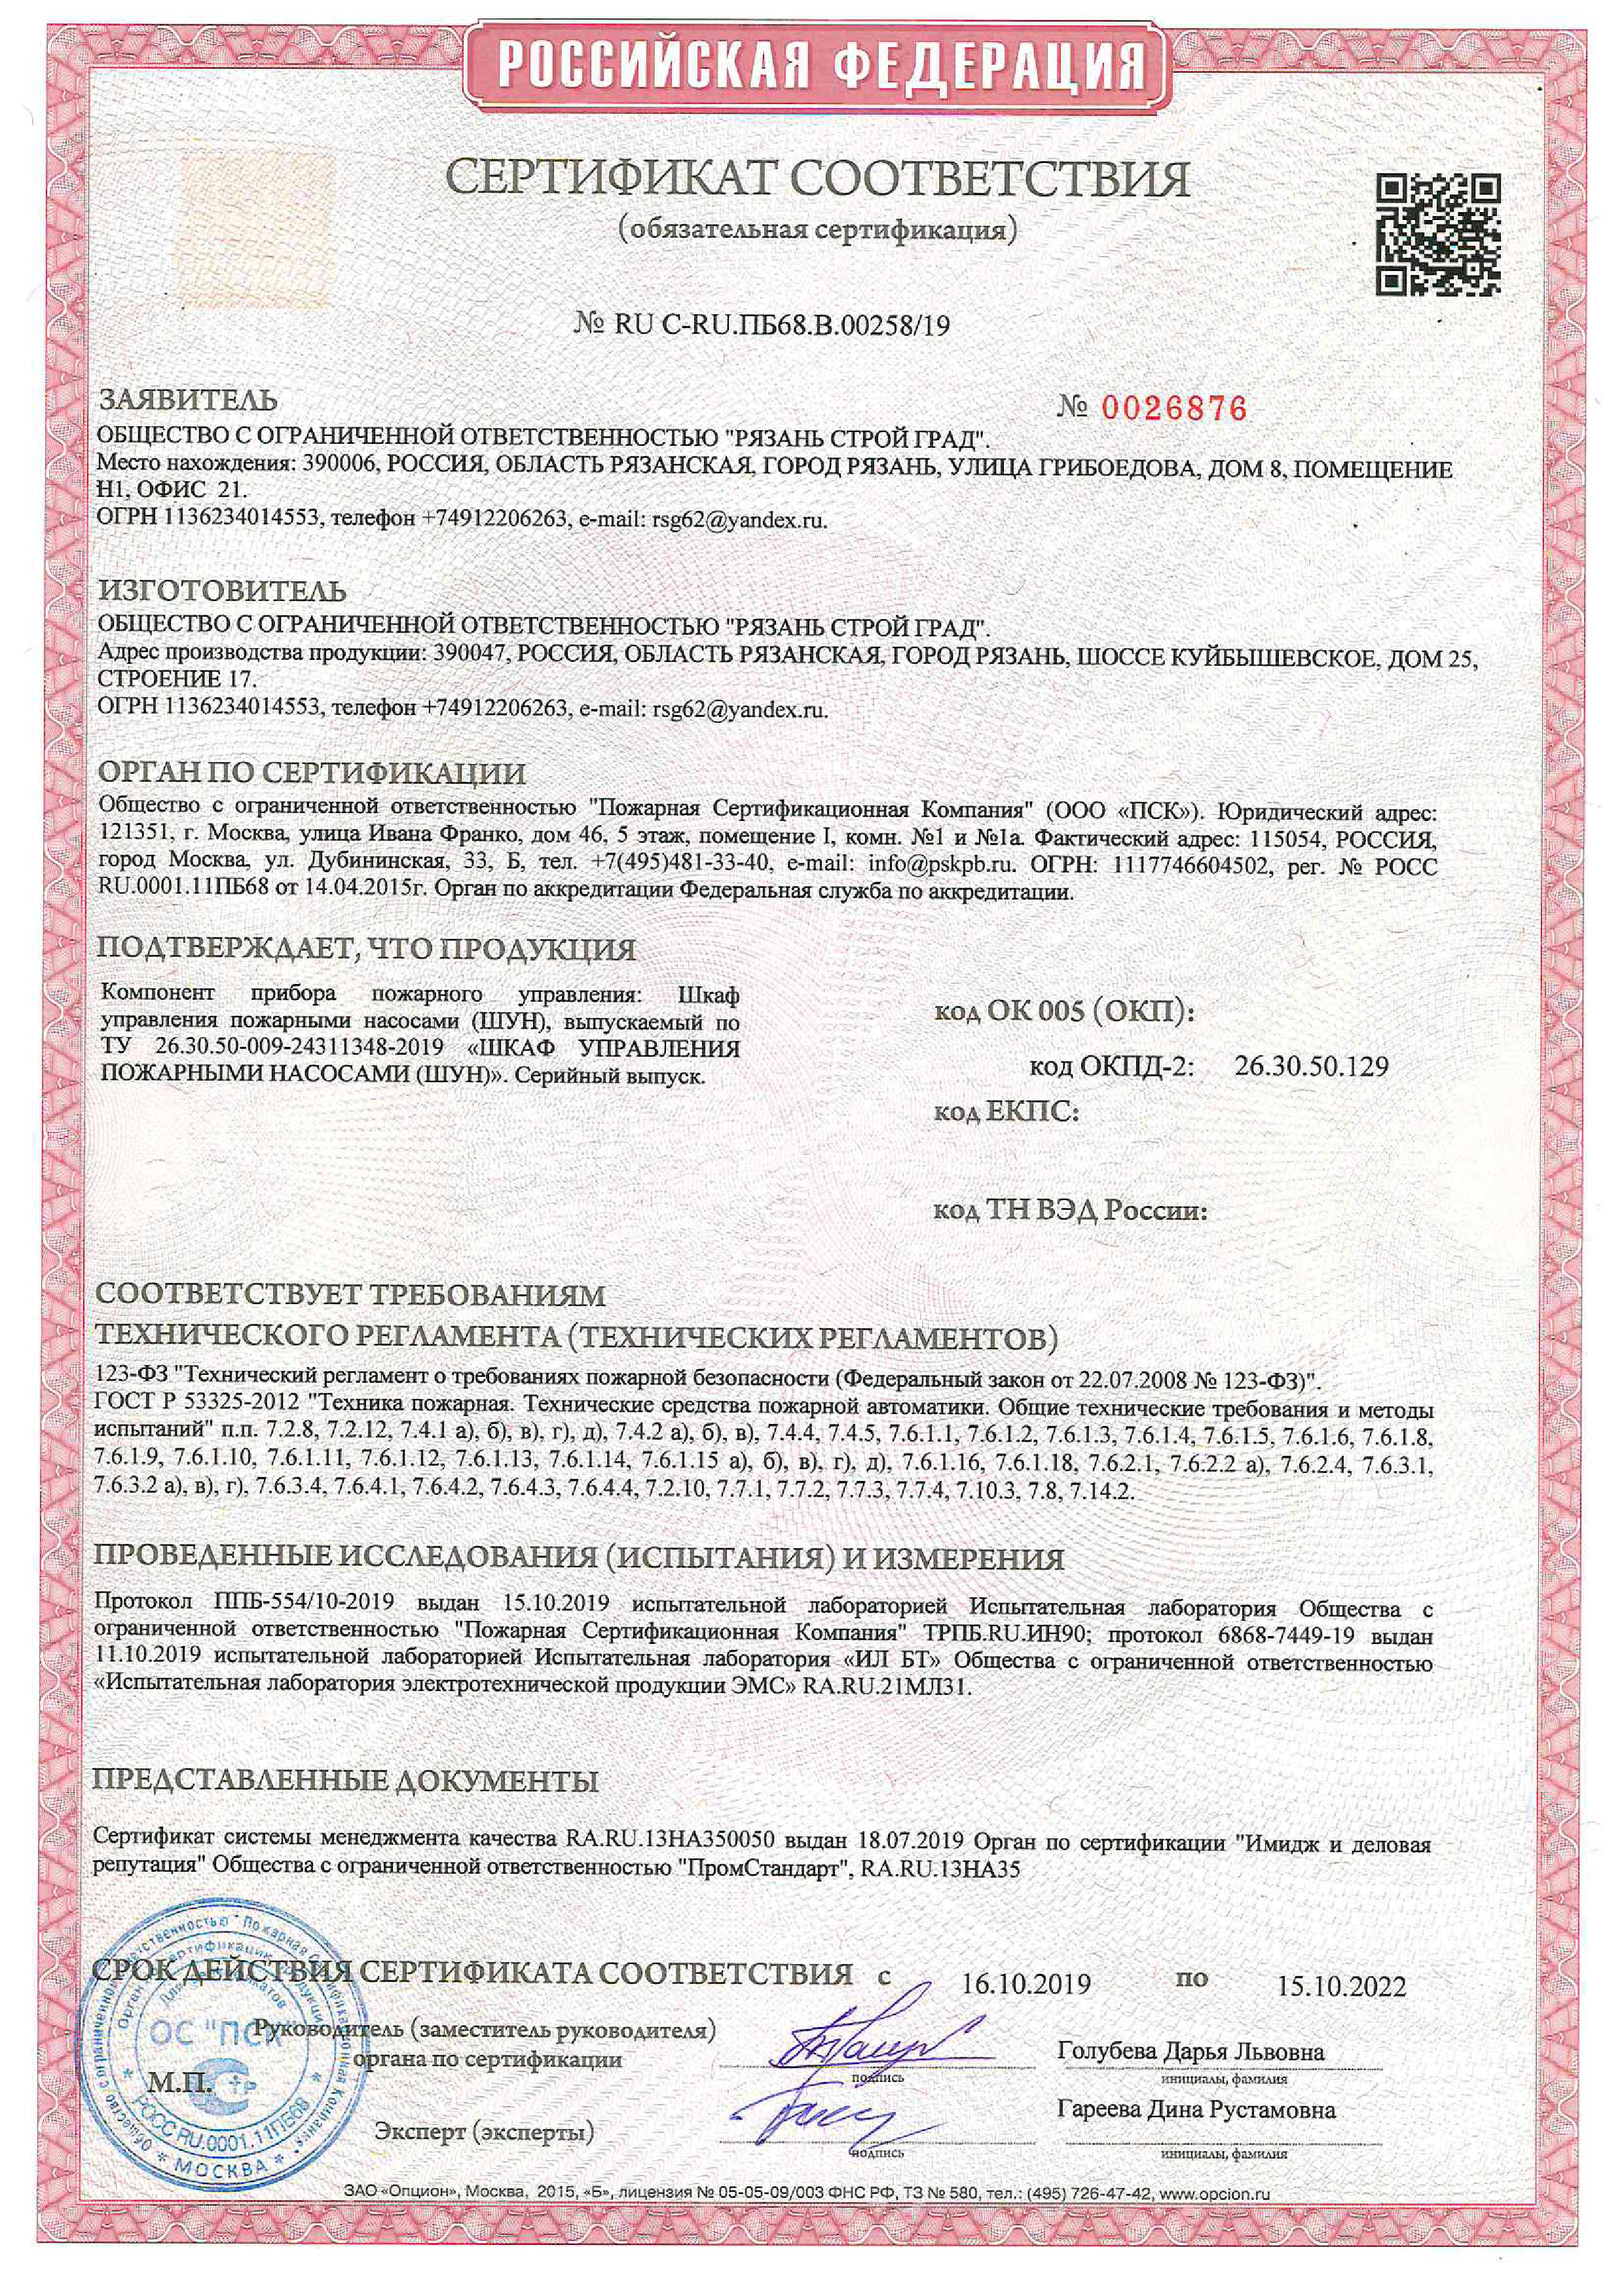 Сертификат соответствия станций пожаротушения